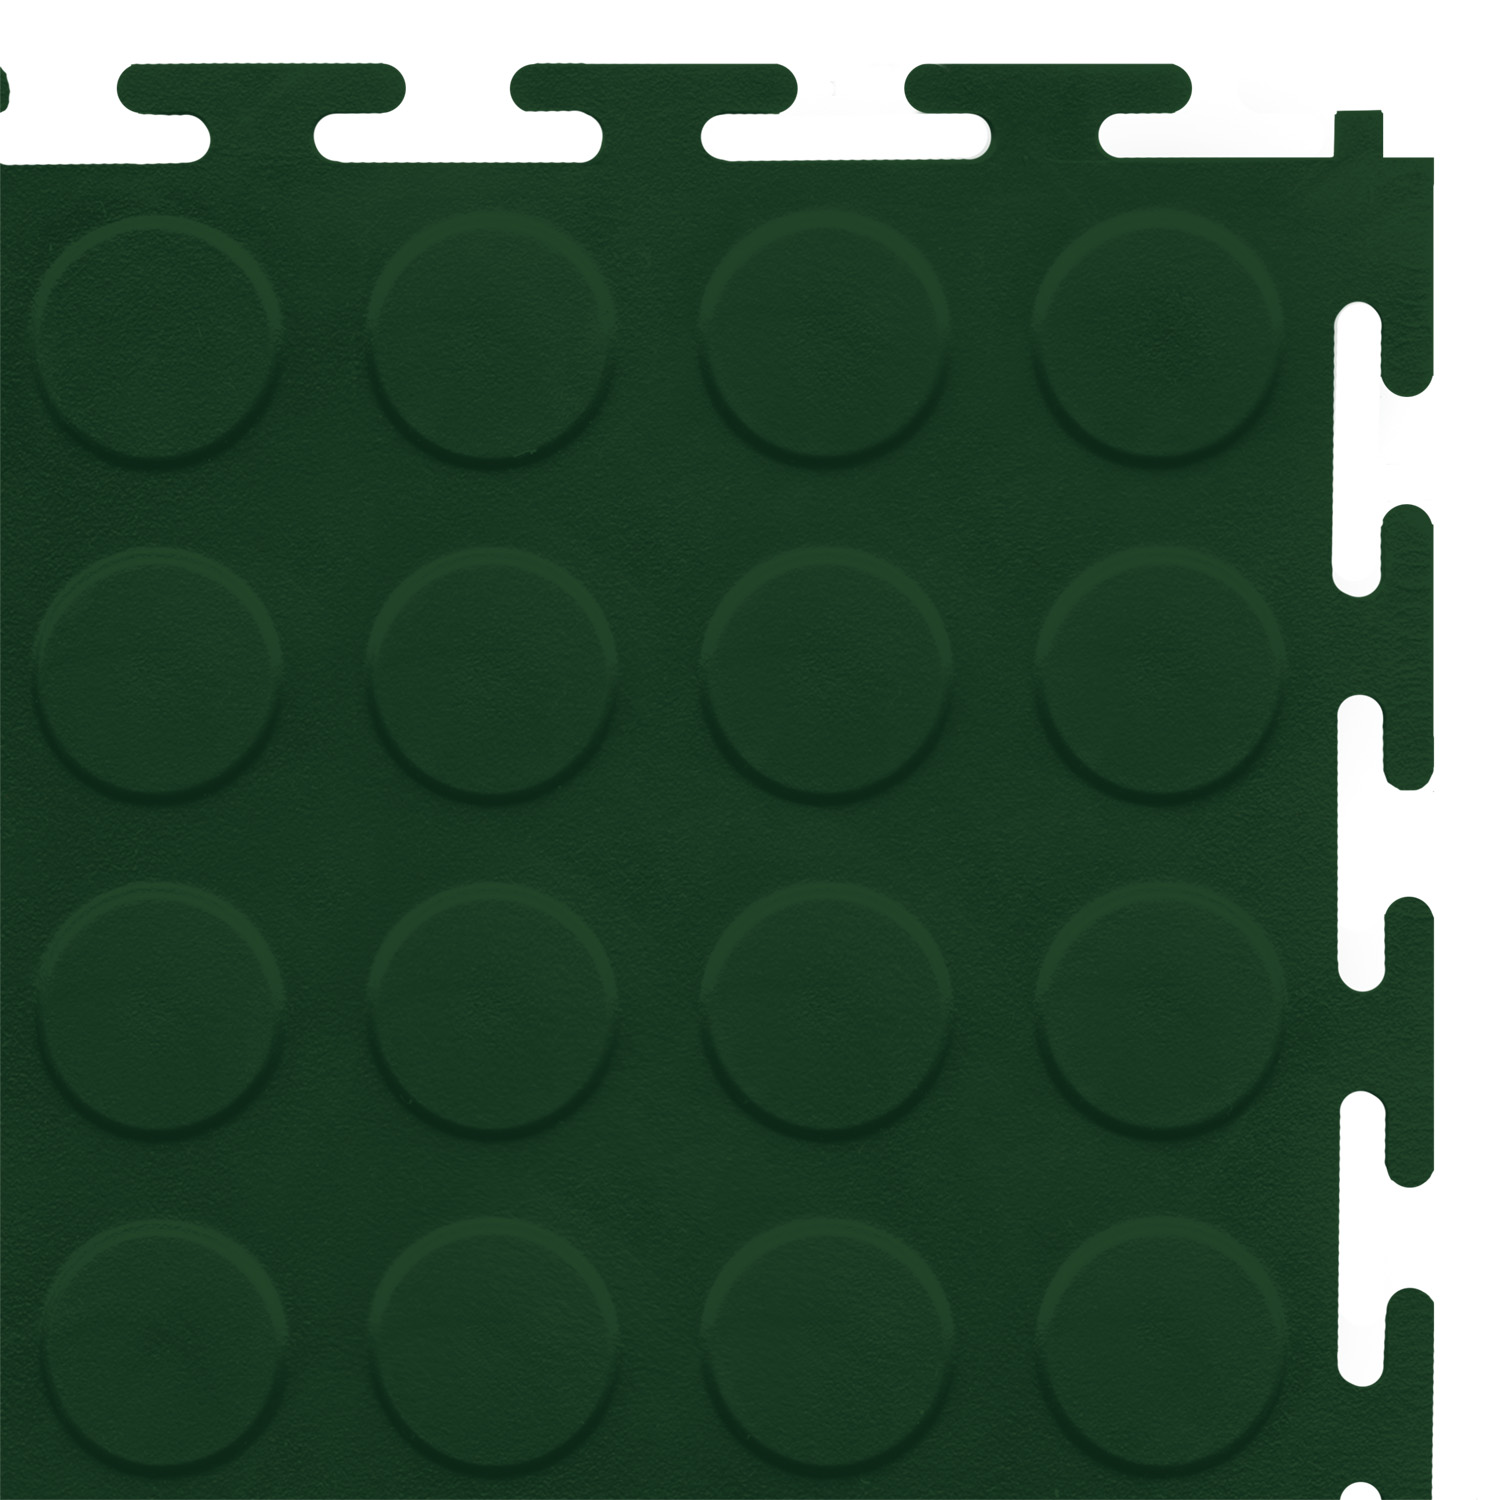 Standard floor tile (green/studded)